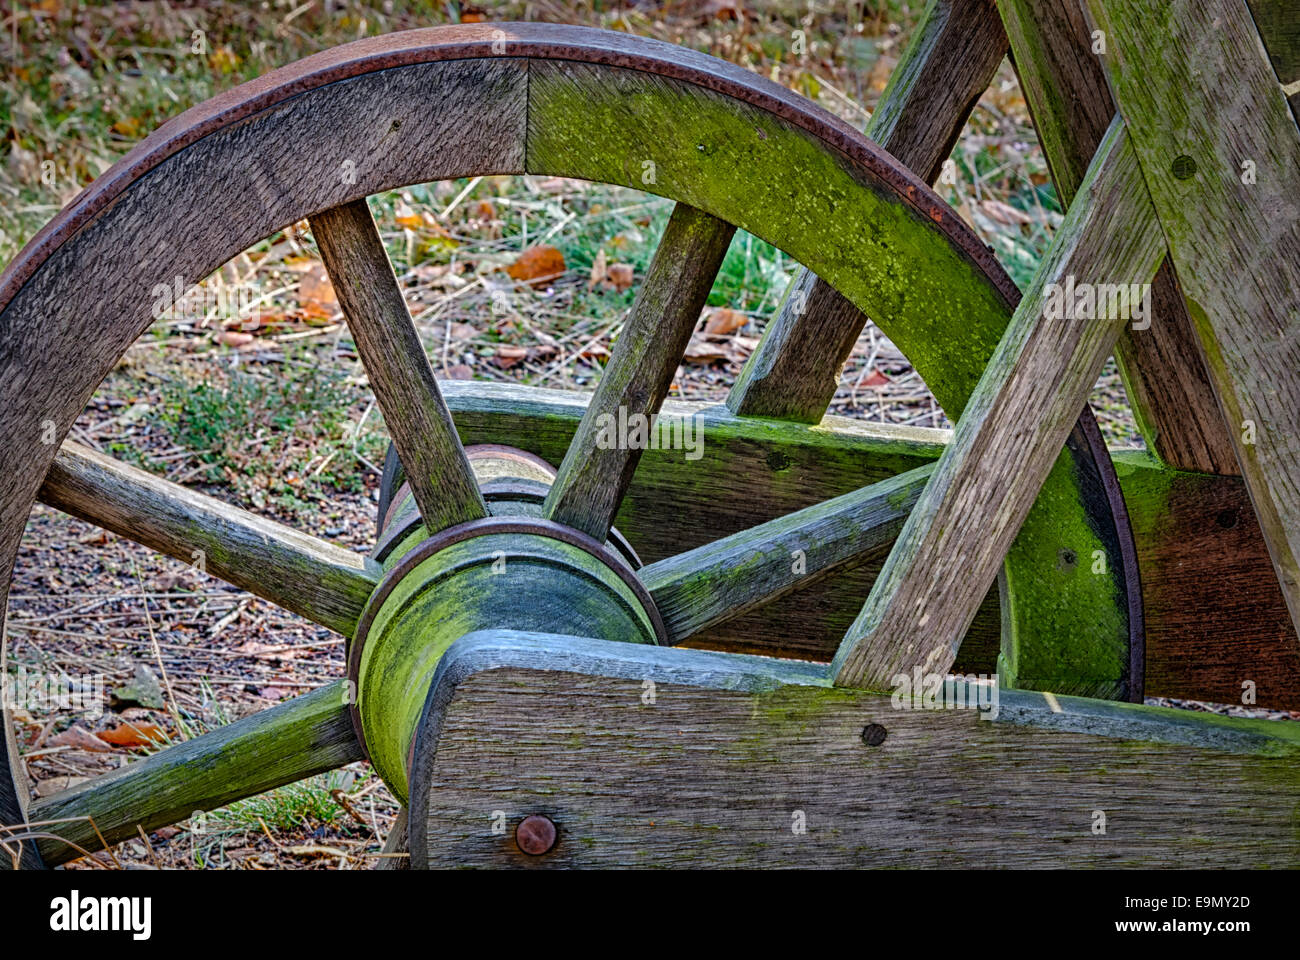 Old wooden wheelbarrow Stock Photo